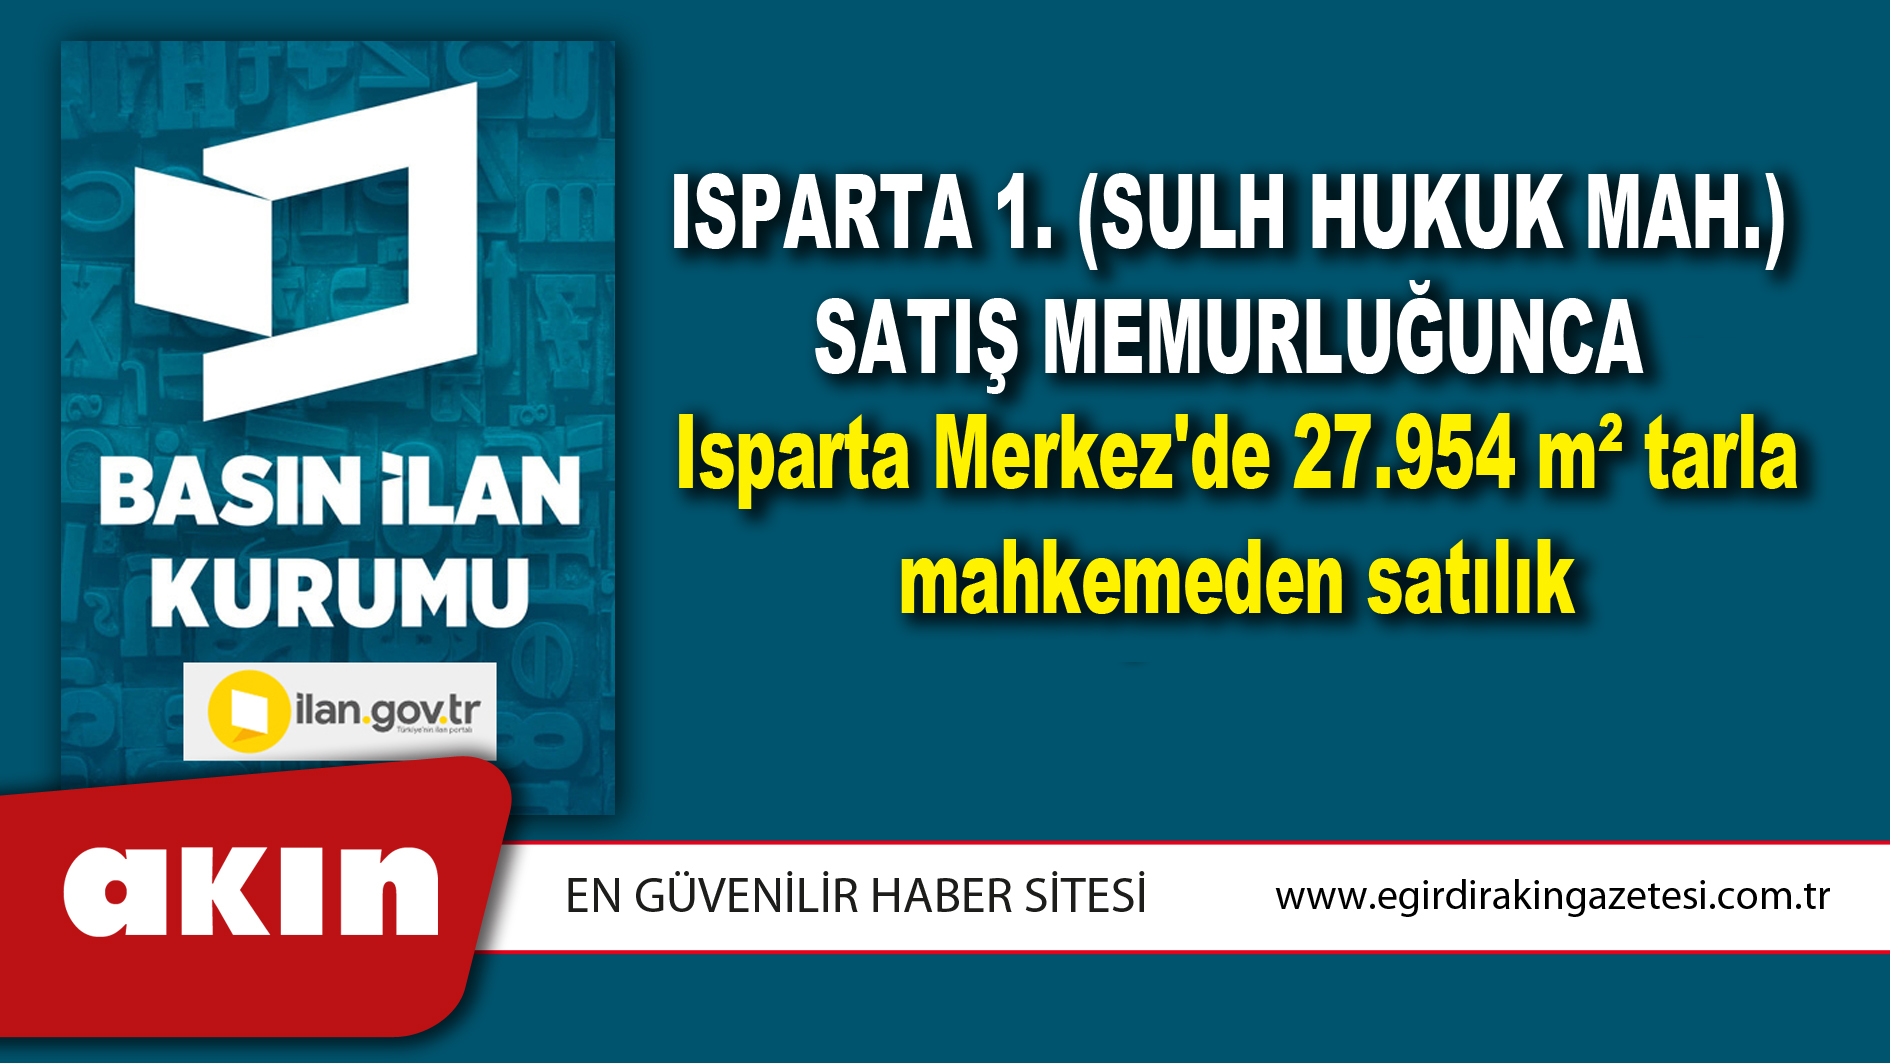 Isparta 1. (Sulh Hukuk Mah.) Satış Memurluğunca Isparta Merkez'de 27.954 m² tarla mahkemeden satılık